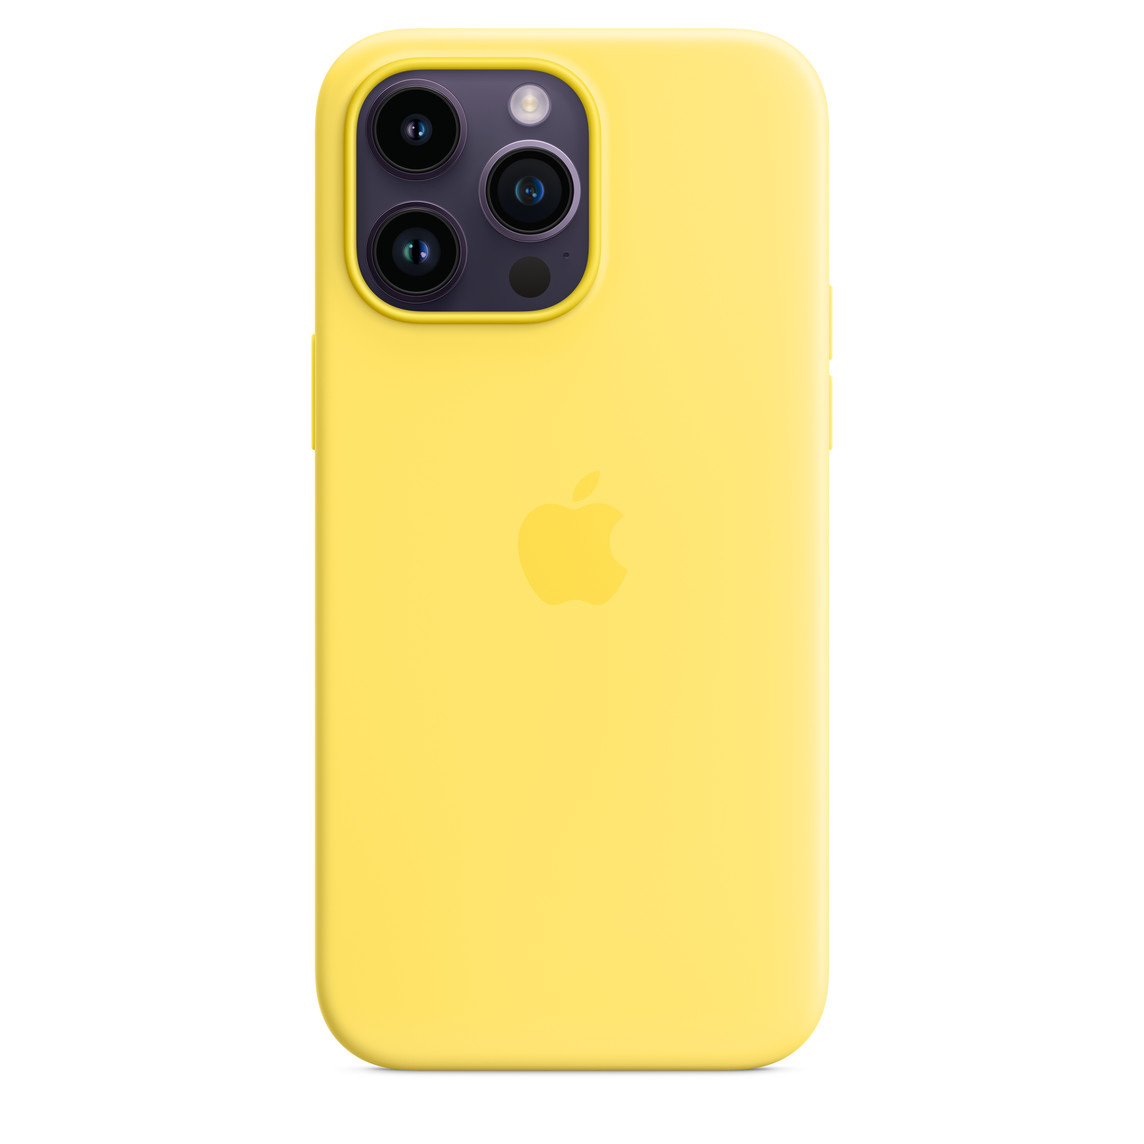 iPhone 14 Pro Max szilikontok kanárisárga (MQUL3ZM/A) Apple gyári MagSafe-rögzítésű (SEASONAL 2023 Spring)